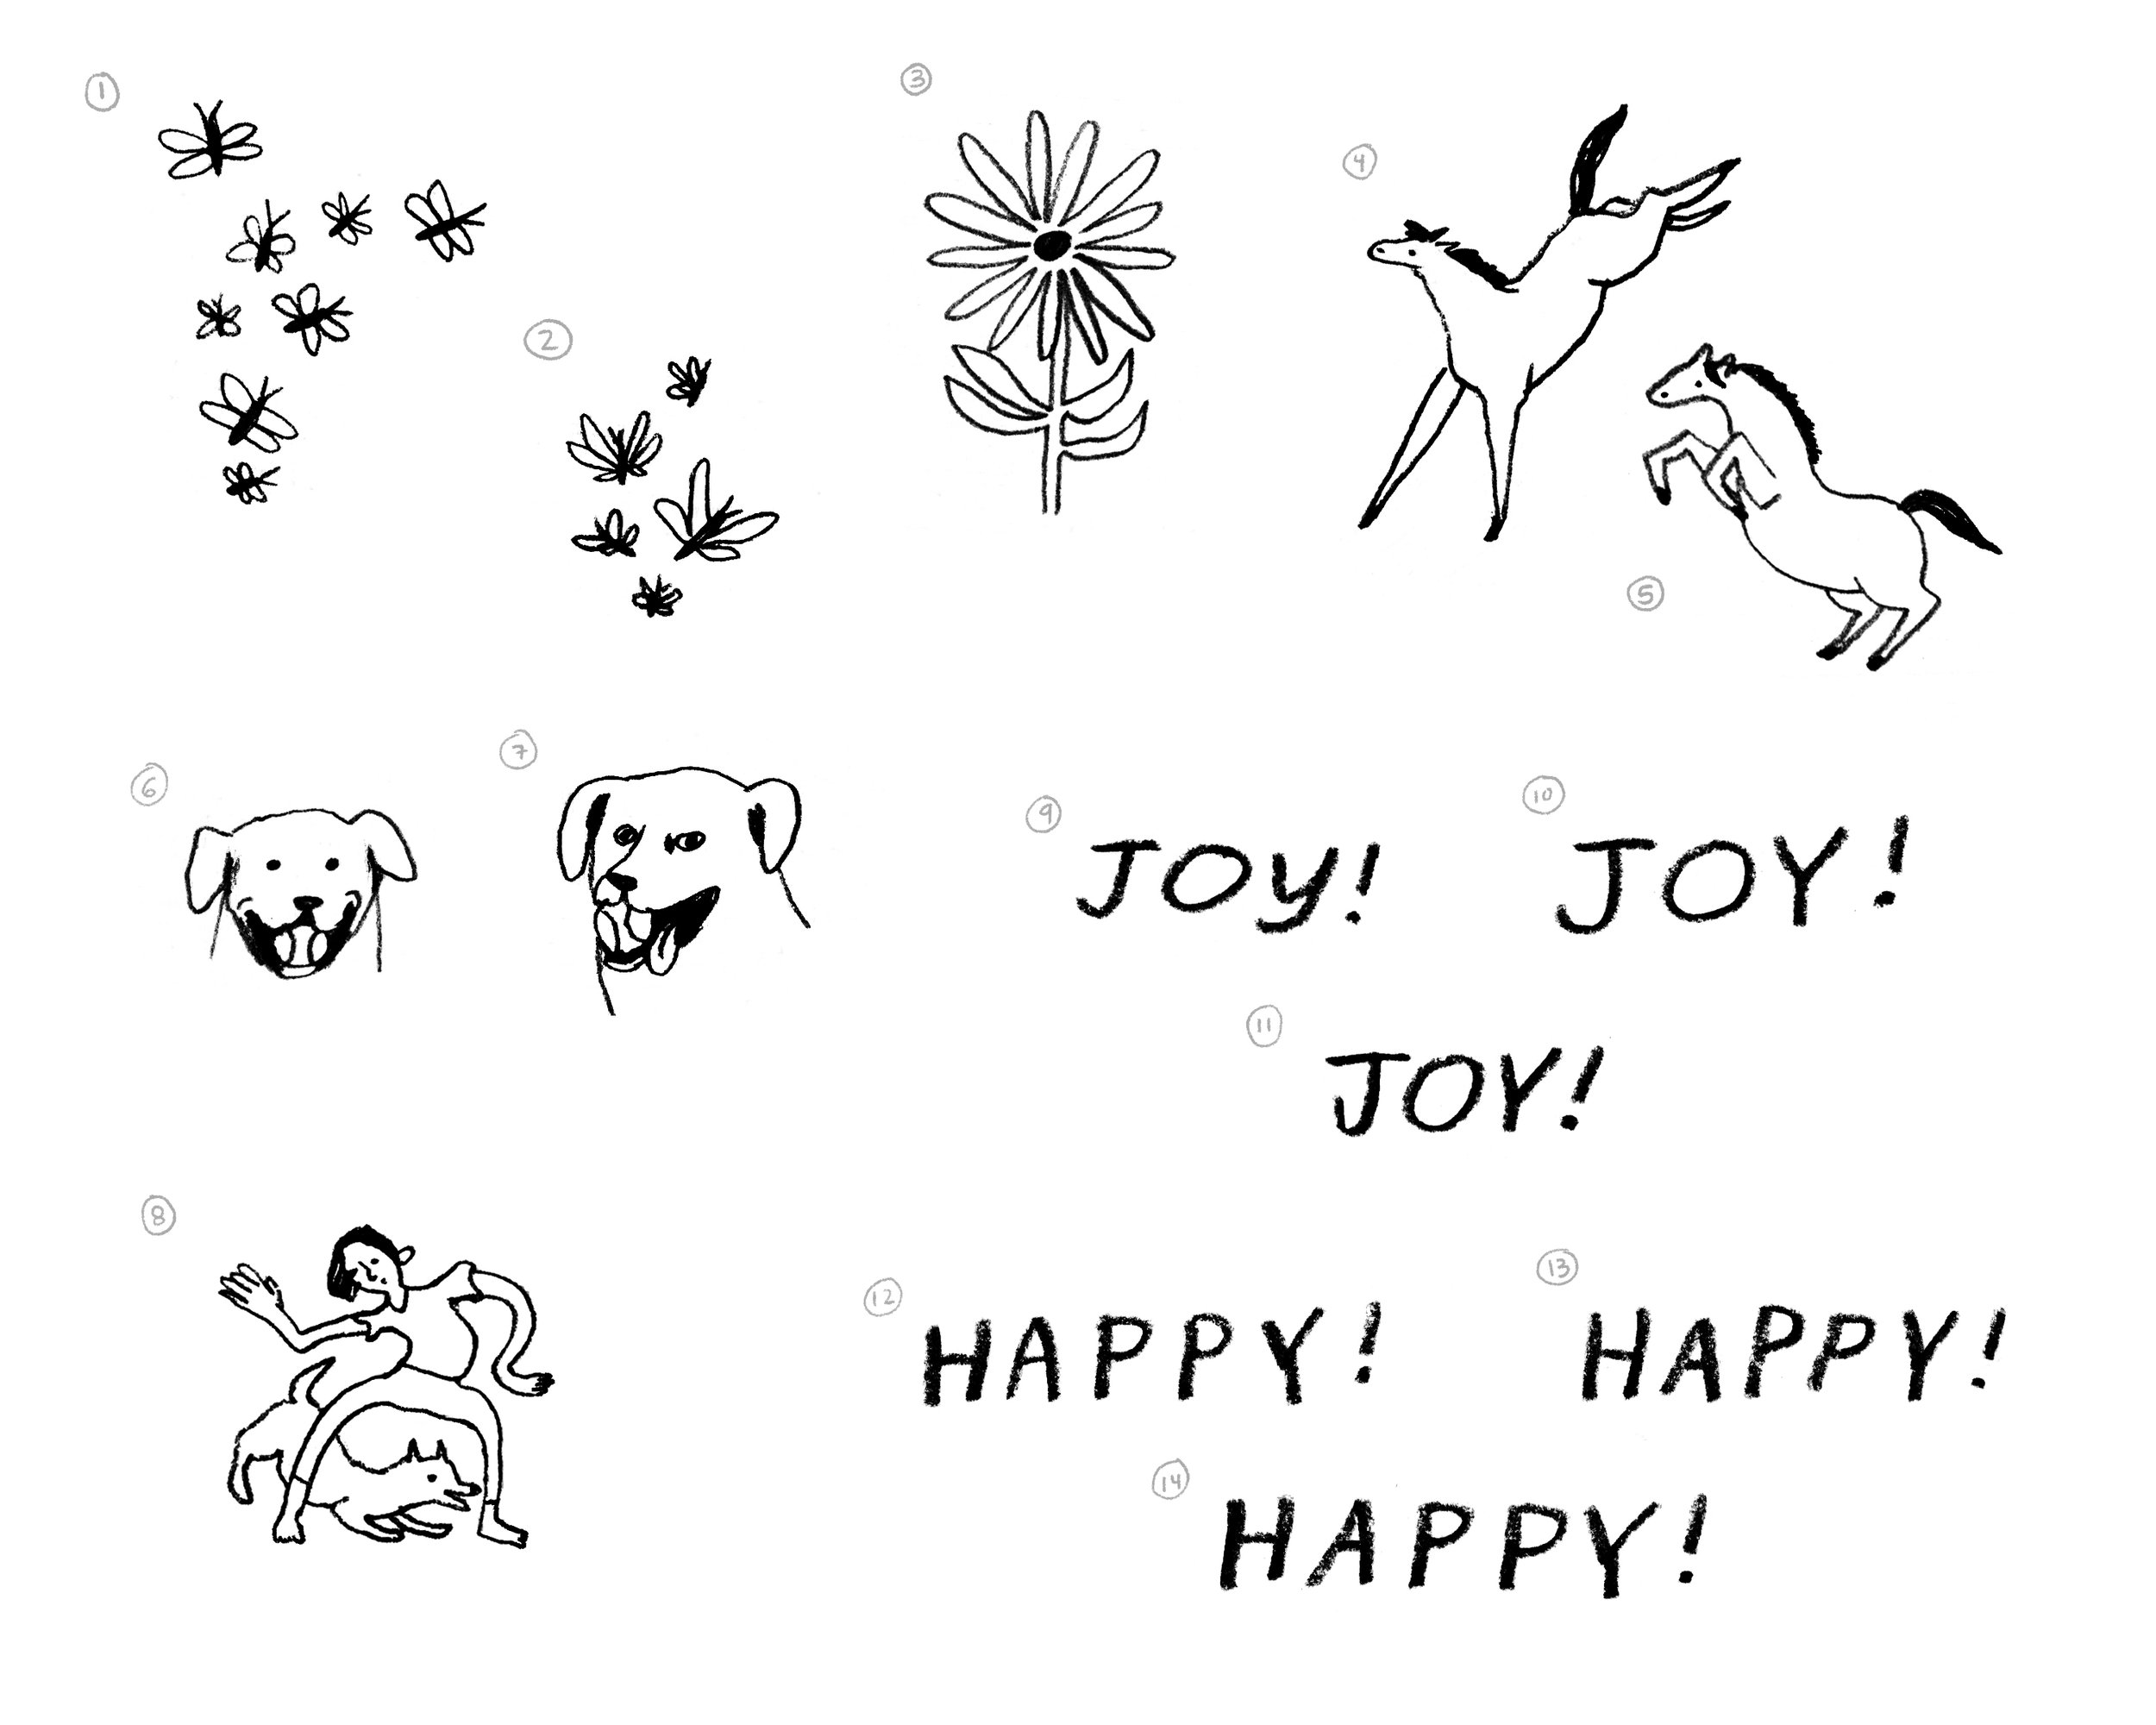 Happy_Joy Concepts.jpg